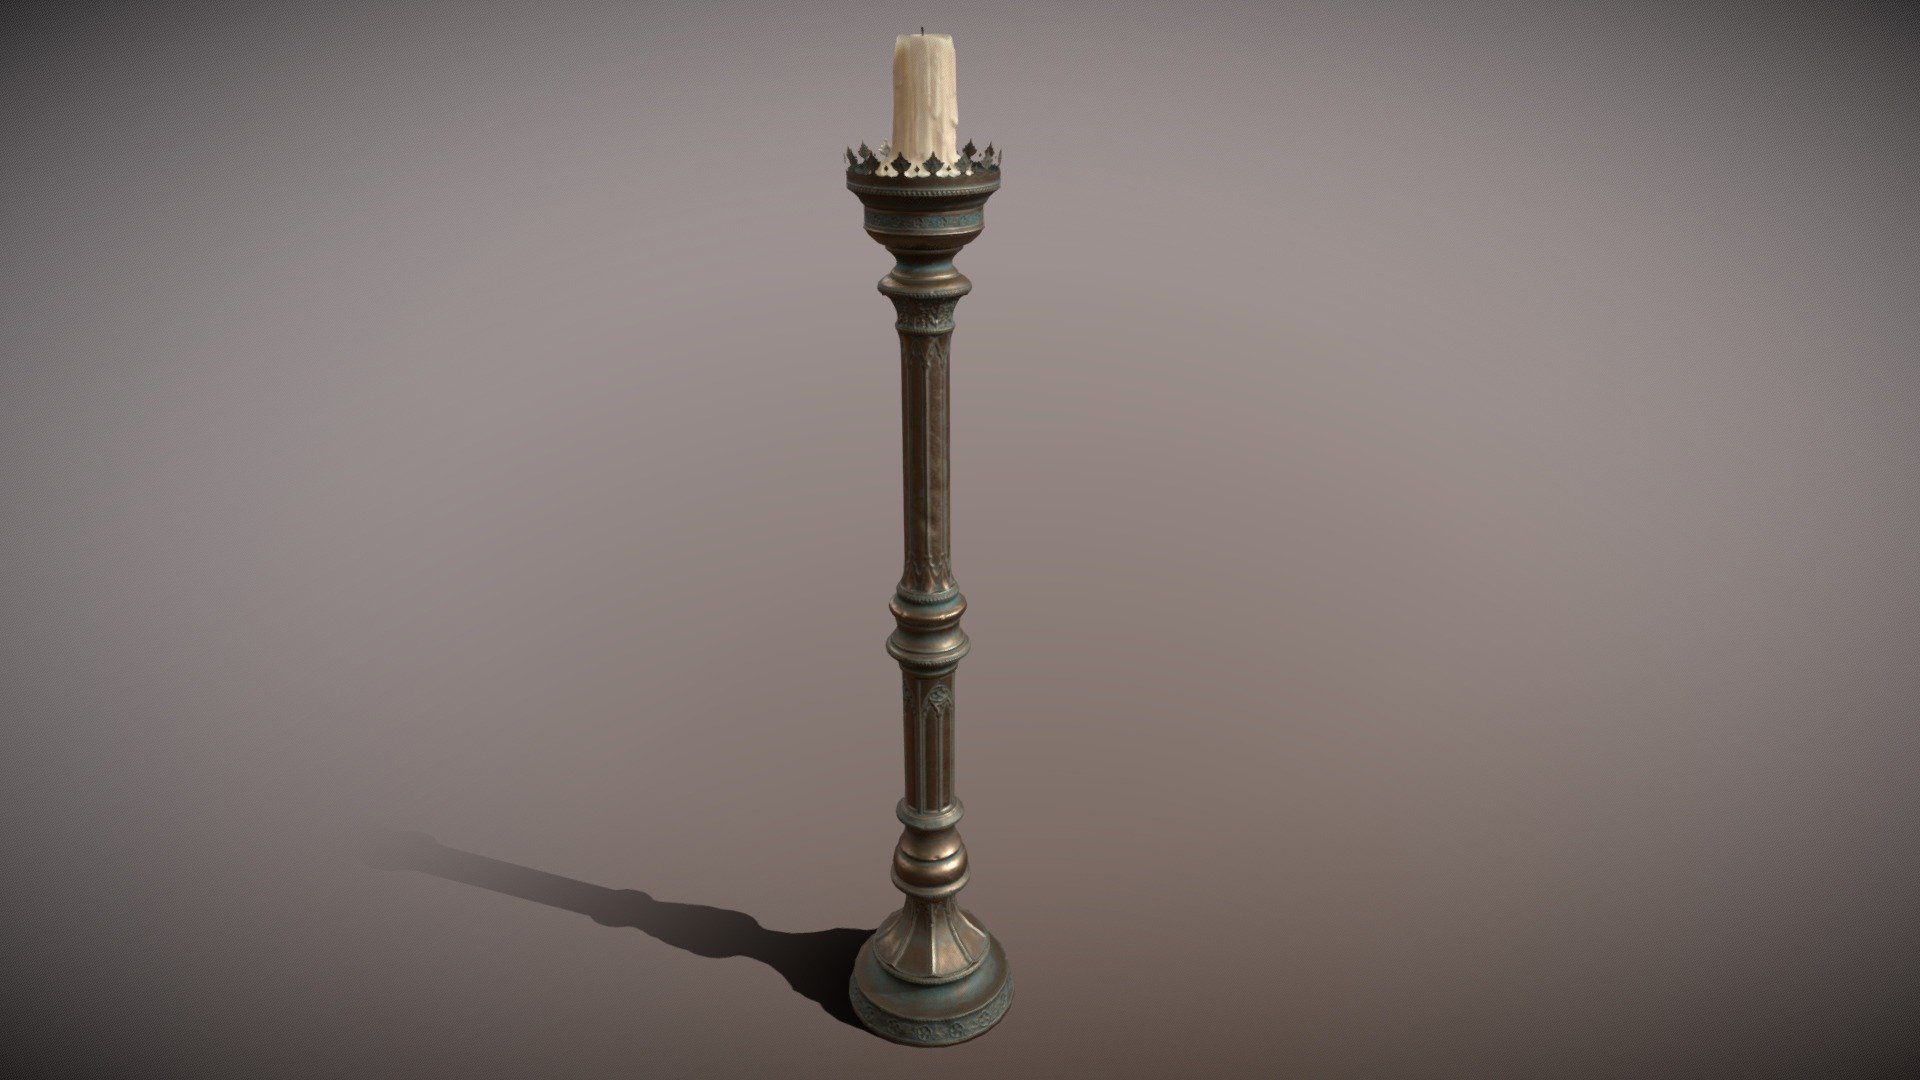 Bronze Candlestick - 3D model by Benjamin (@benjammin) 3d model